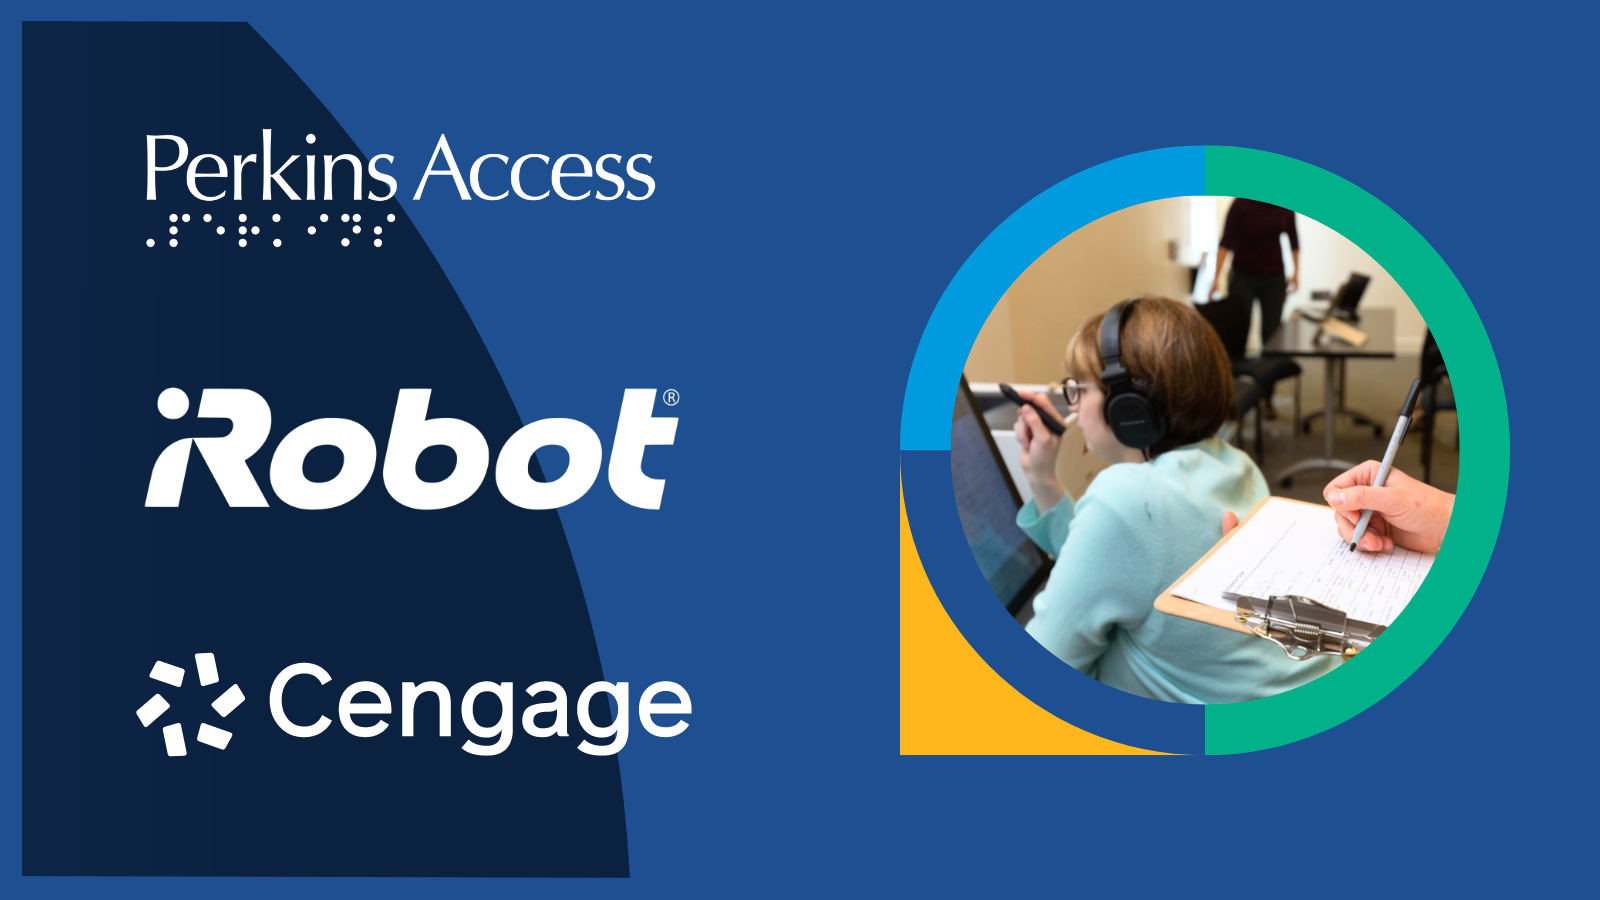 iRobot, Perkins Access and Cengage logos.